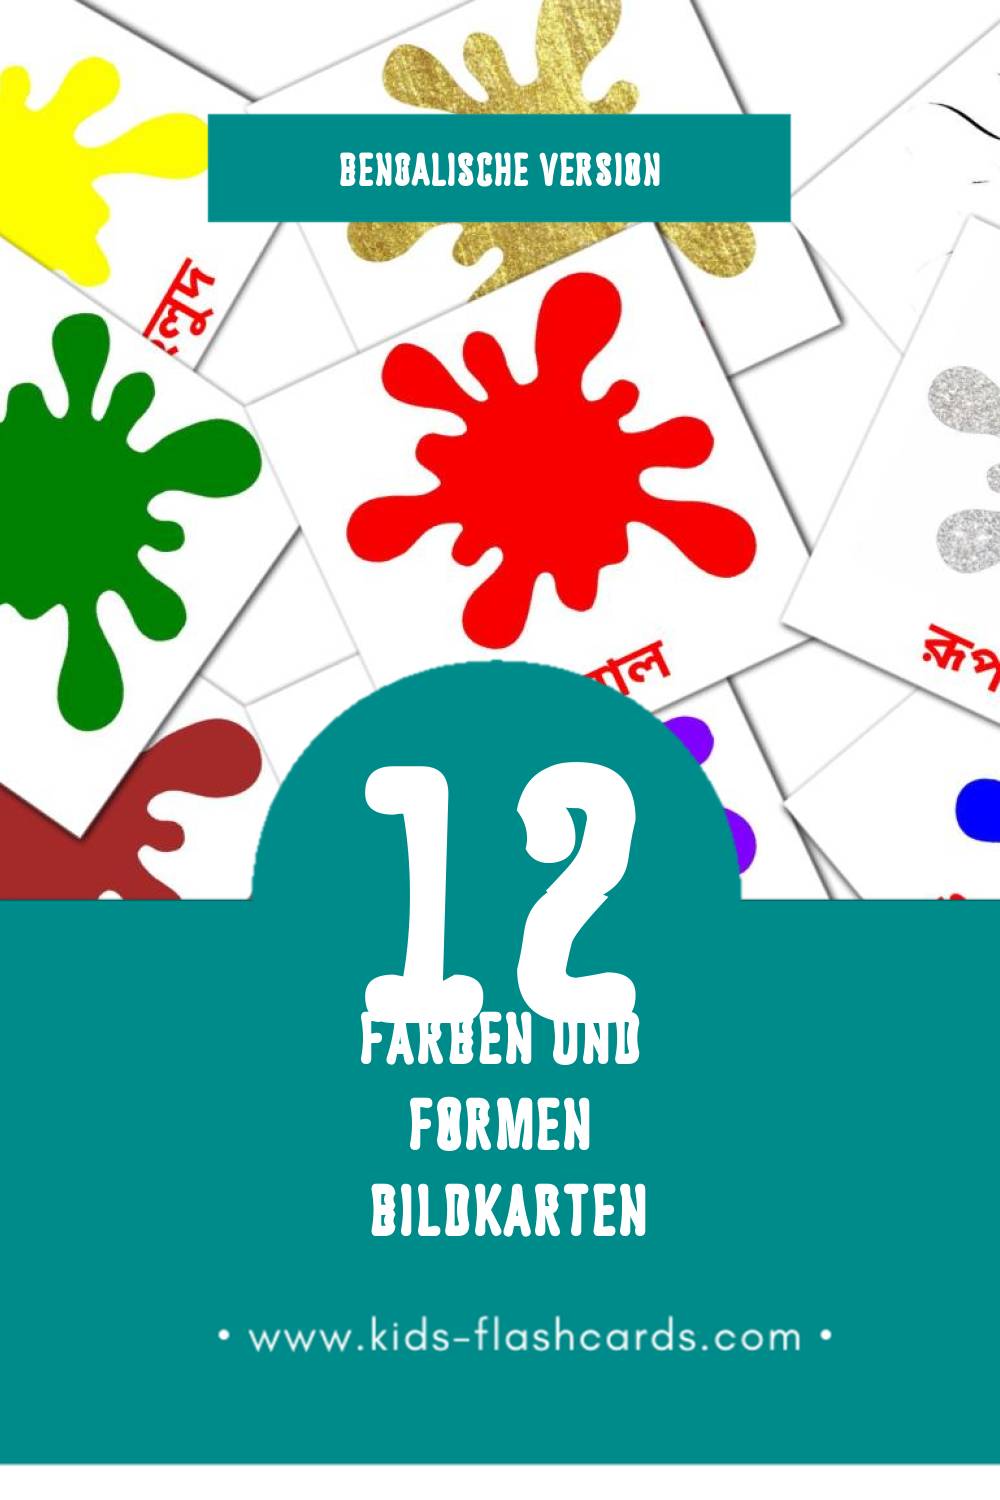 Visual রং ও আকৃতি  Flashcards für Kleinkinder (12 Karten in Bengalisch)